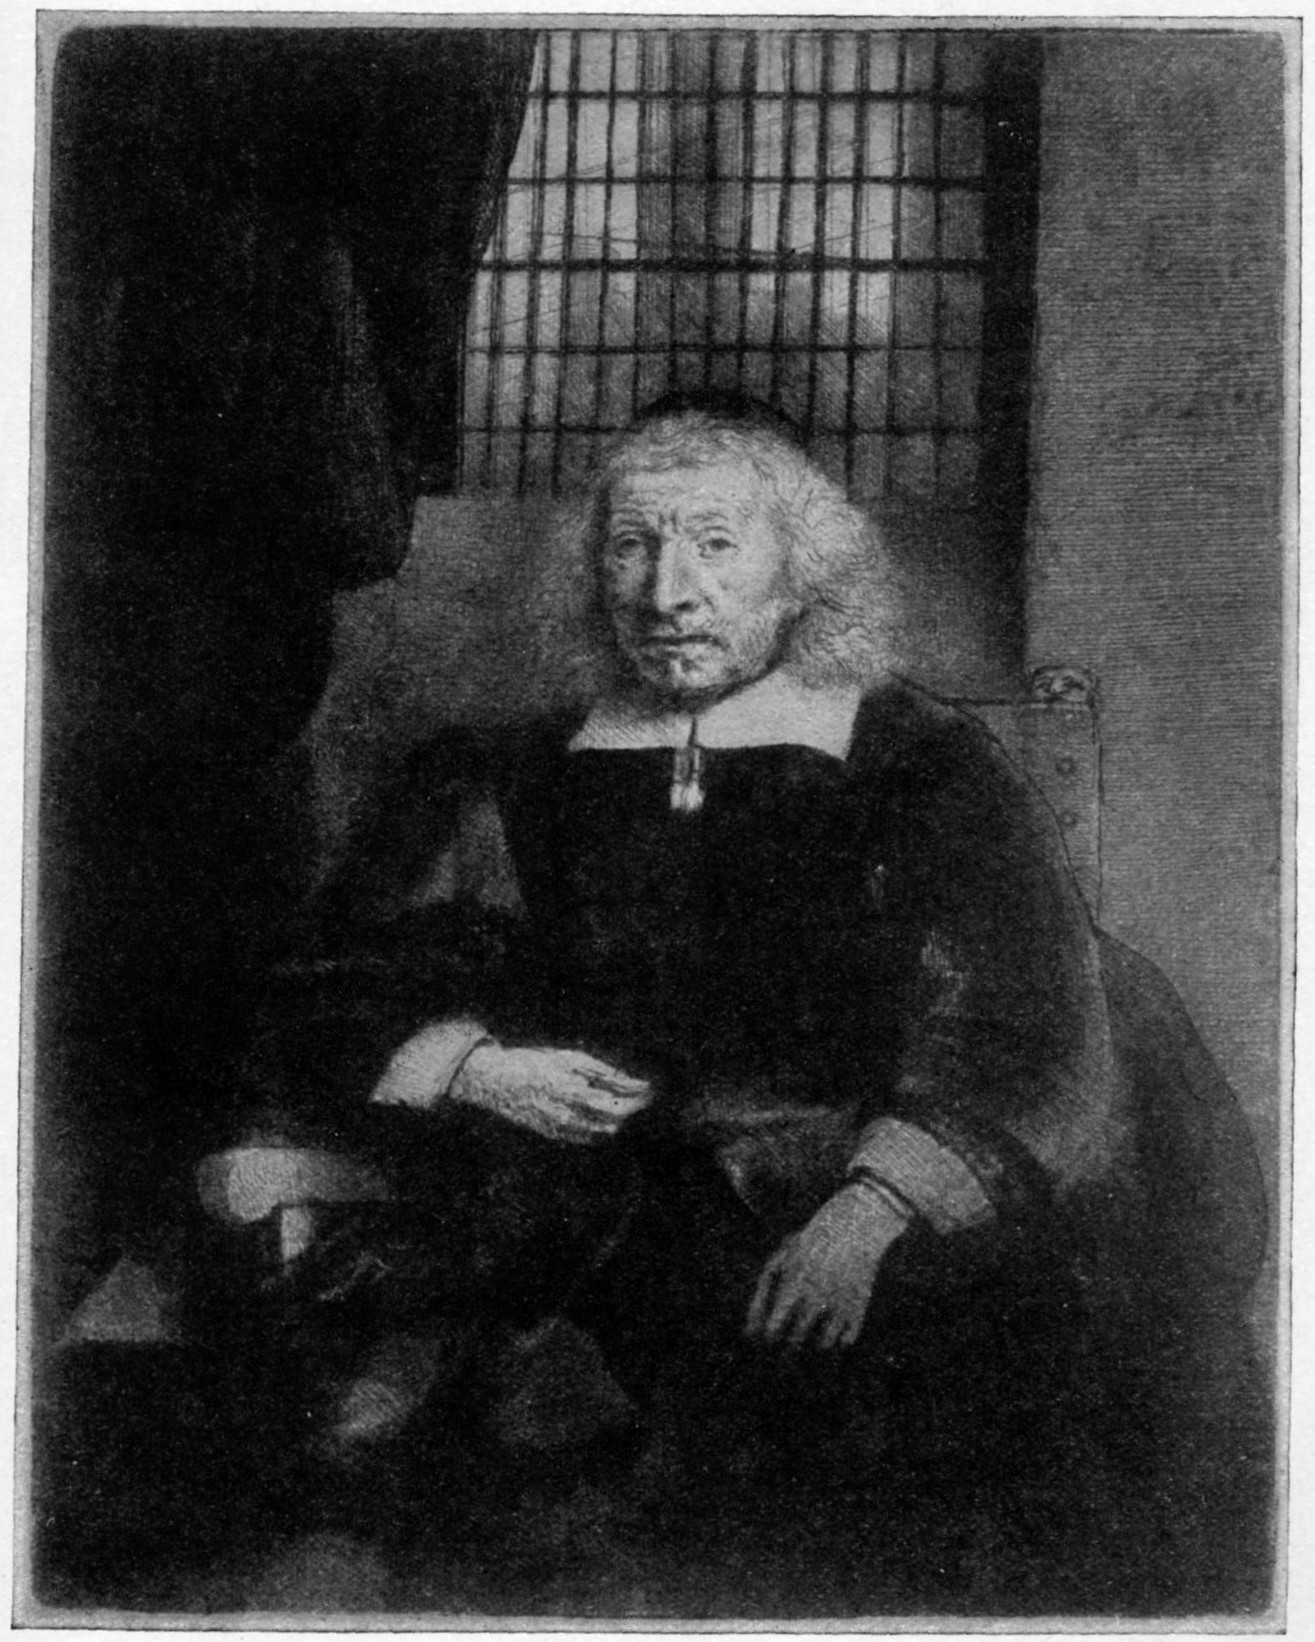 287, II. JACOB HAARING (THE “OLD HAARING”). (1655.) B. 274